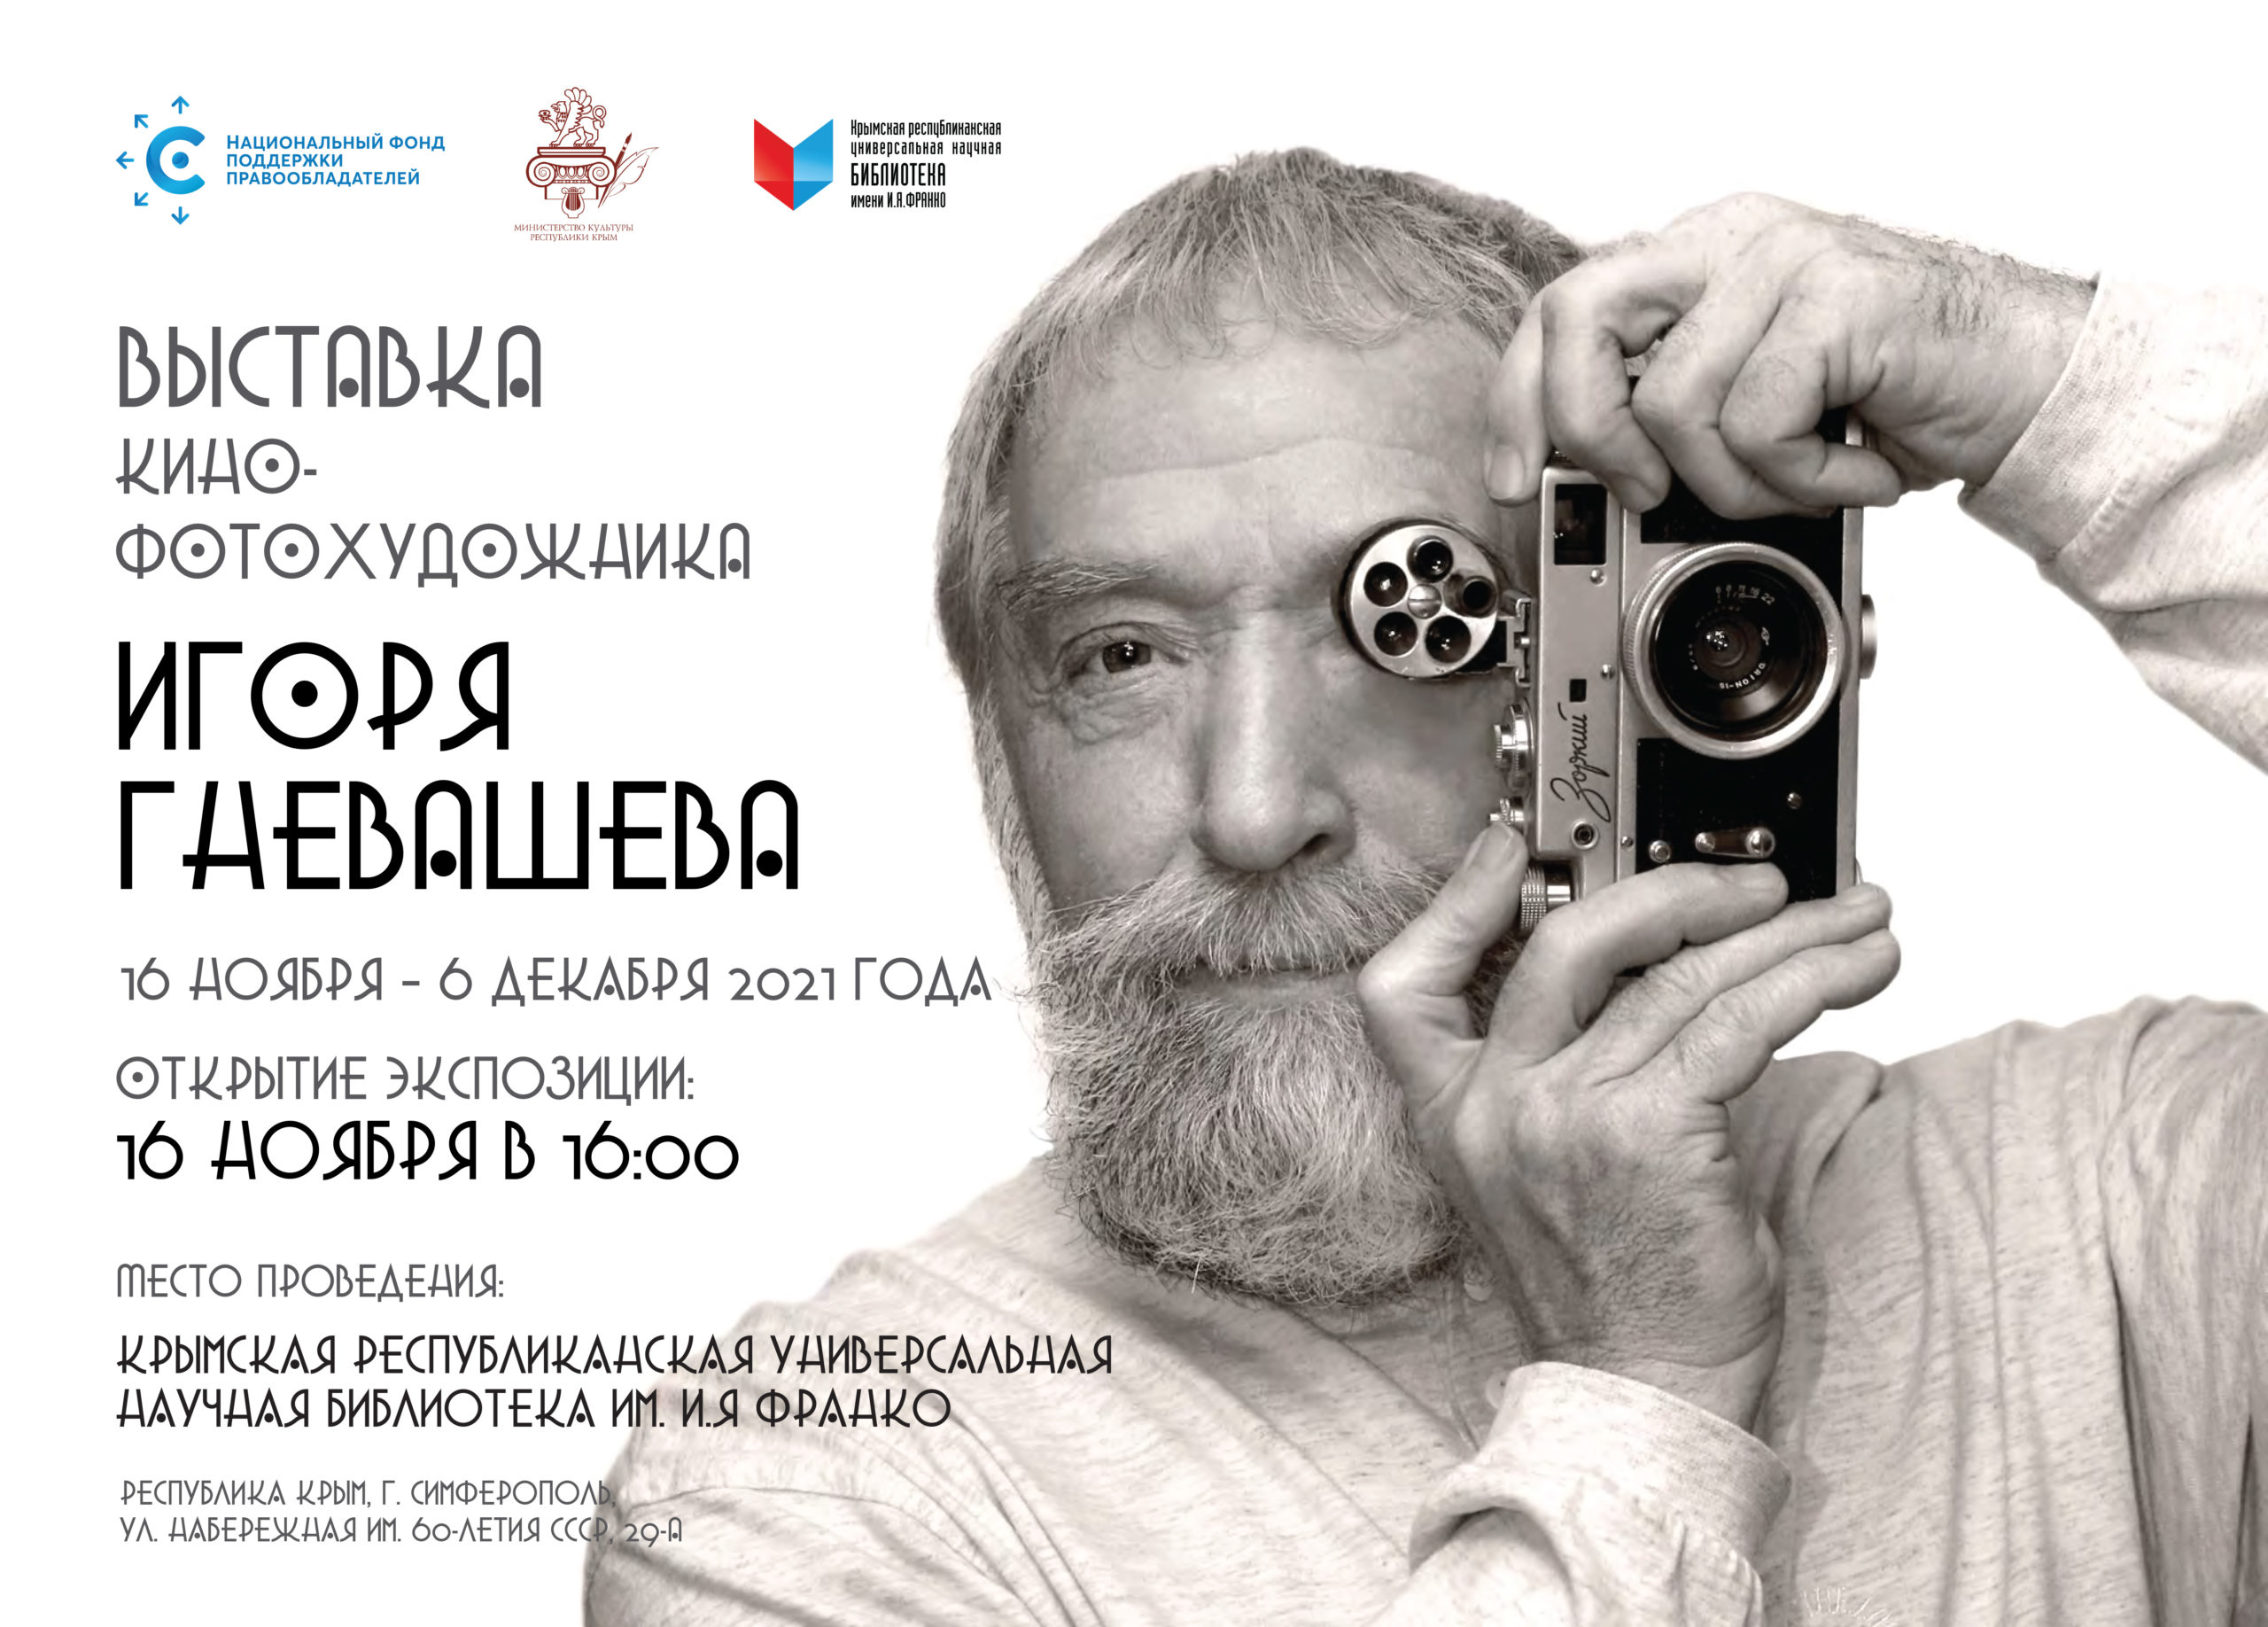 НФПП организует выставку фоторабот Игоря Гневашева в Симферополе